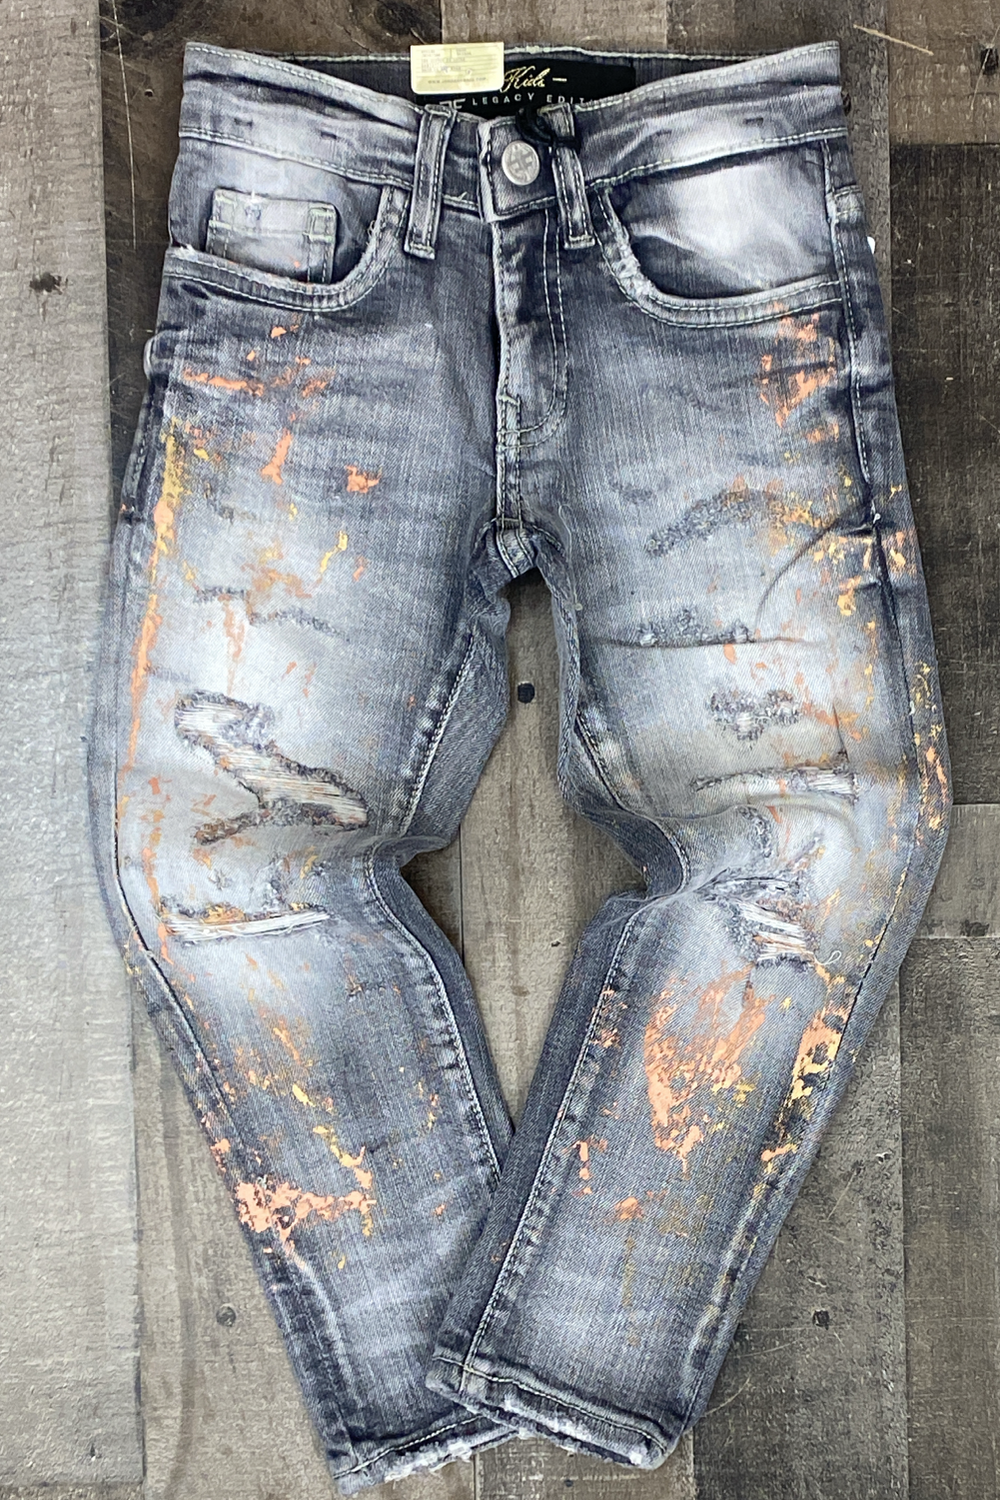 Jordan Craig- painted jeans (kids)